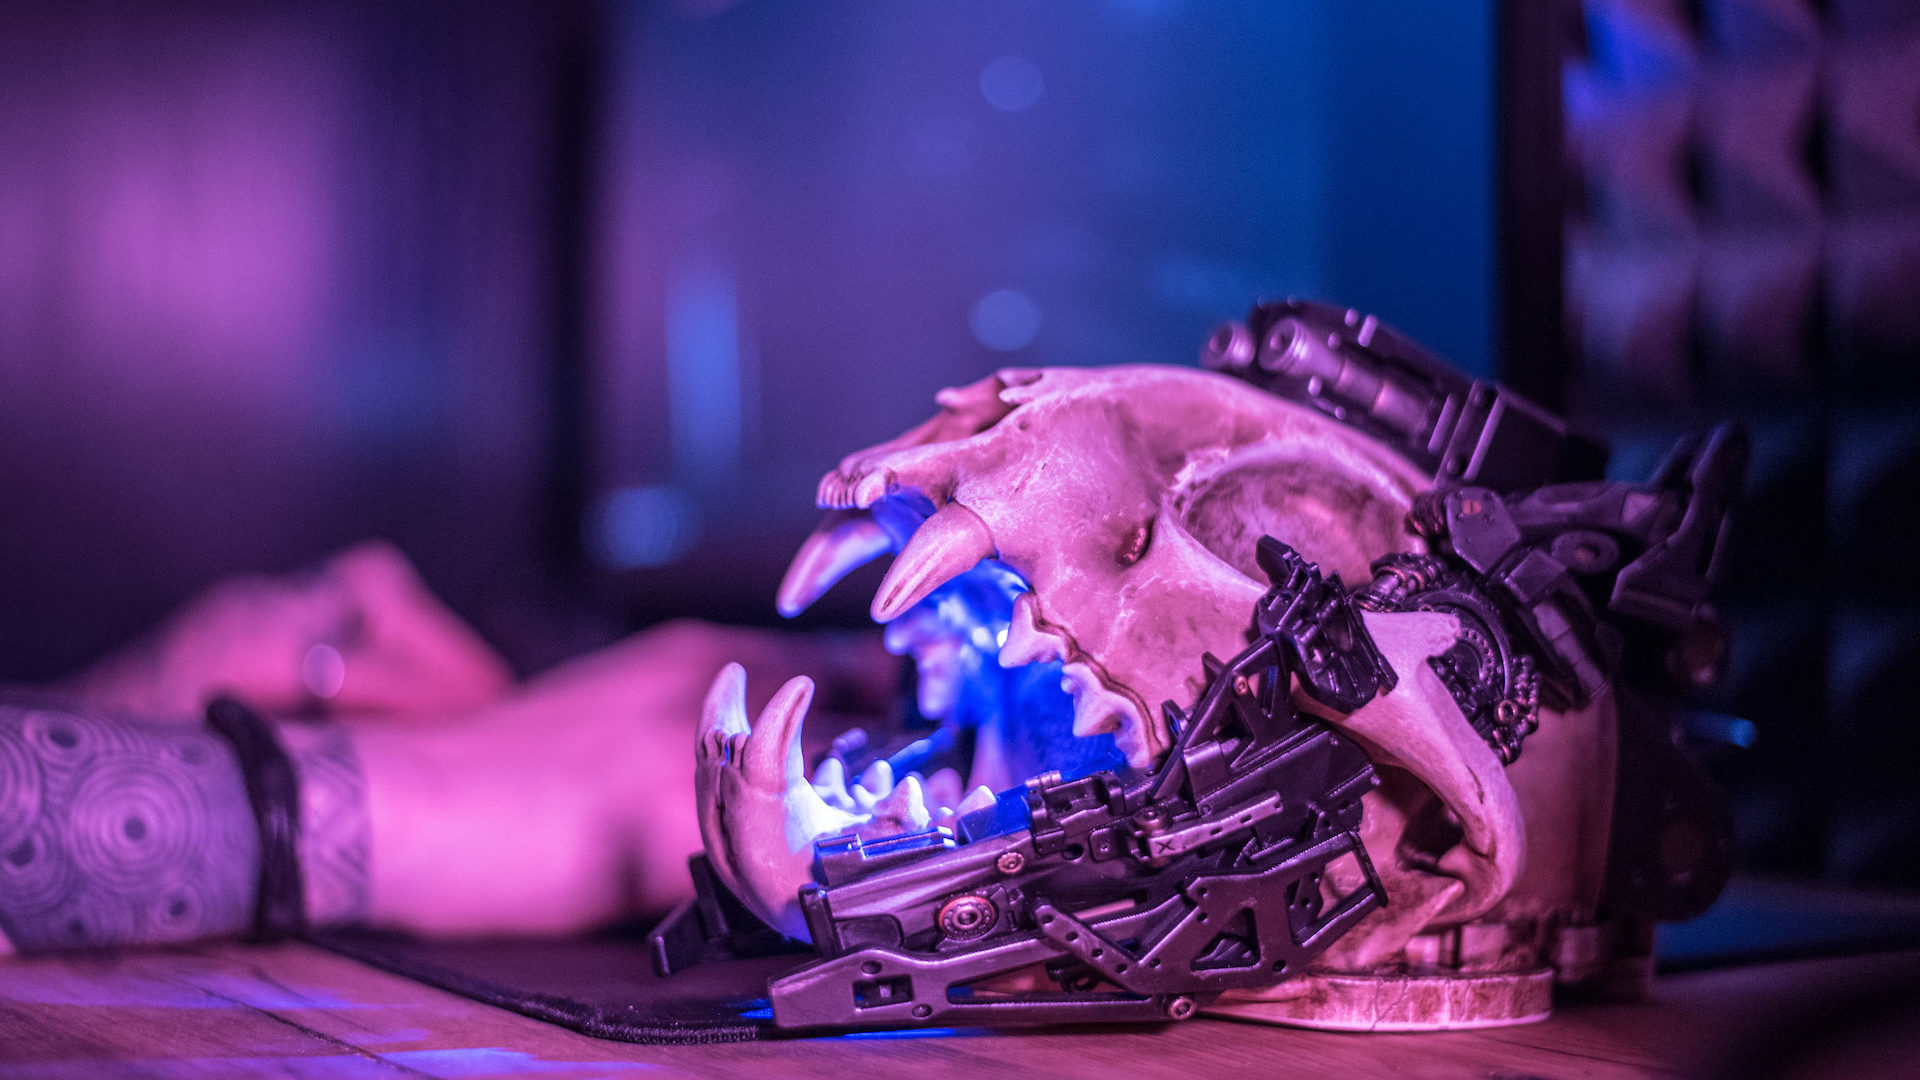 Kranio – the cyberpunk skull speaker for your soul